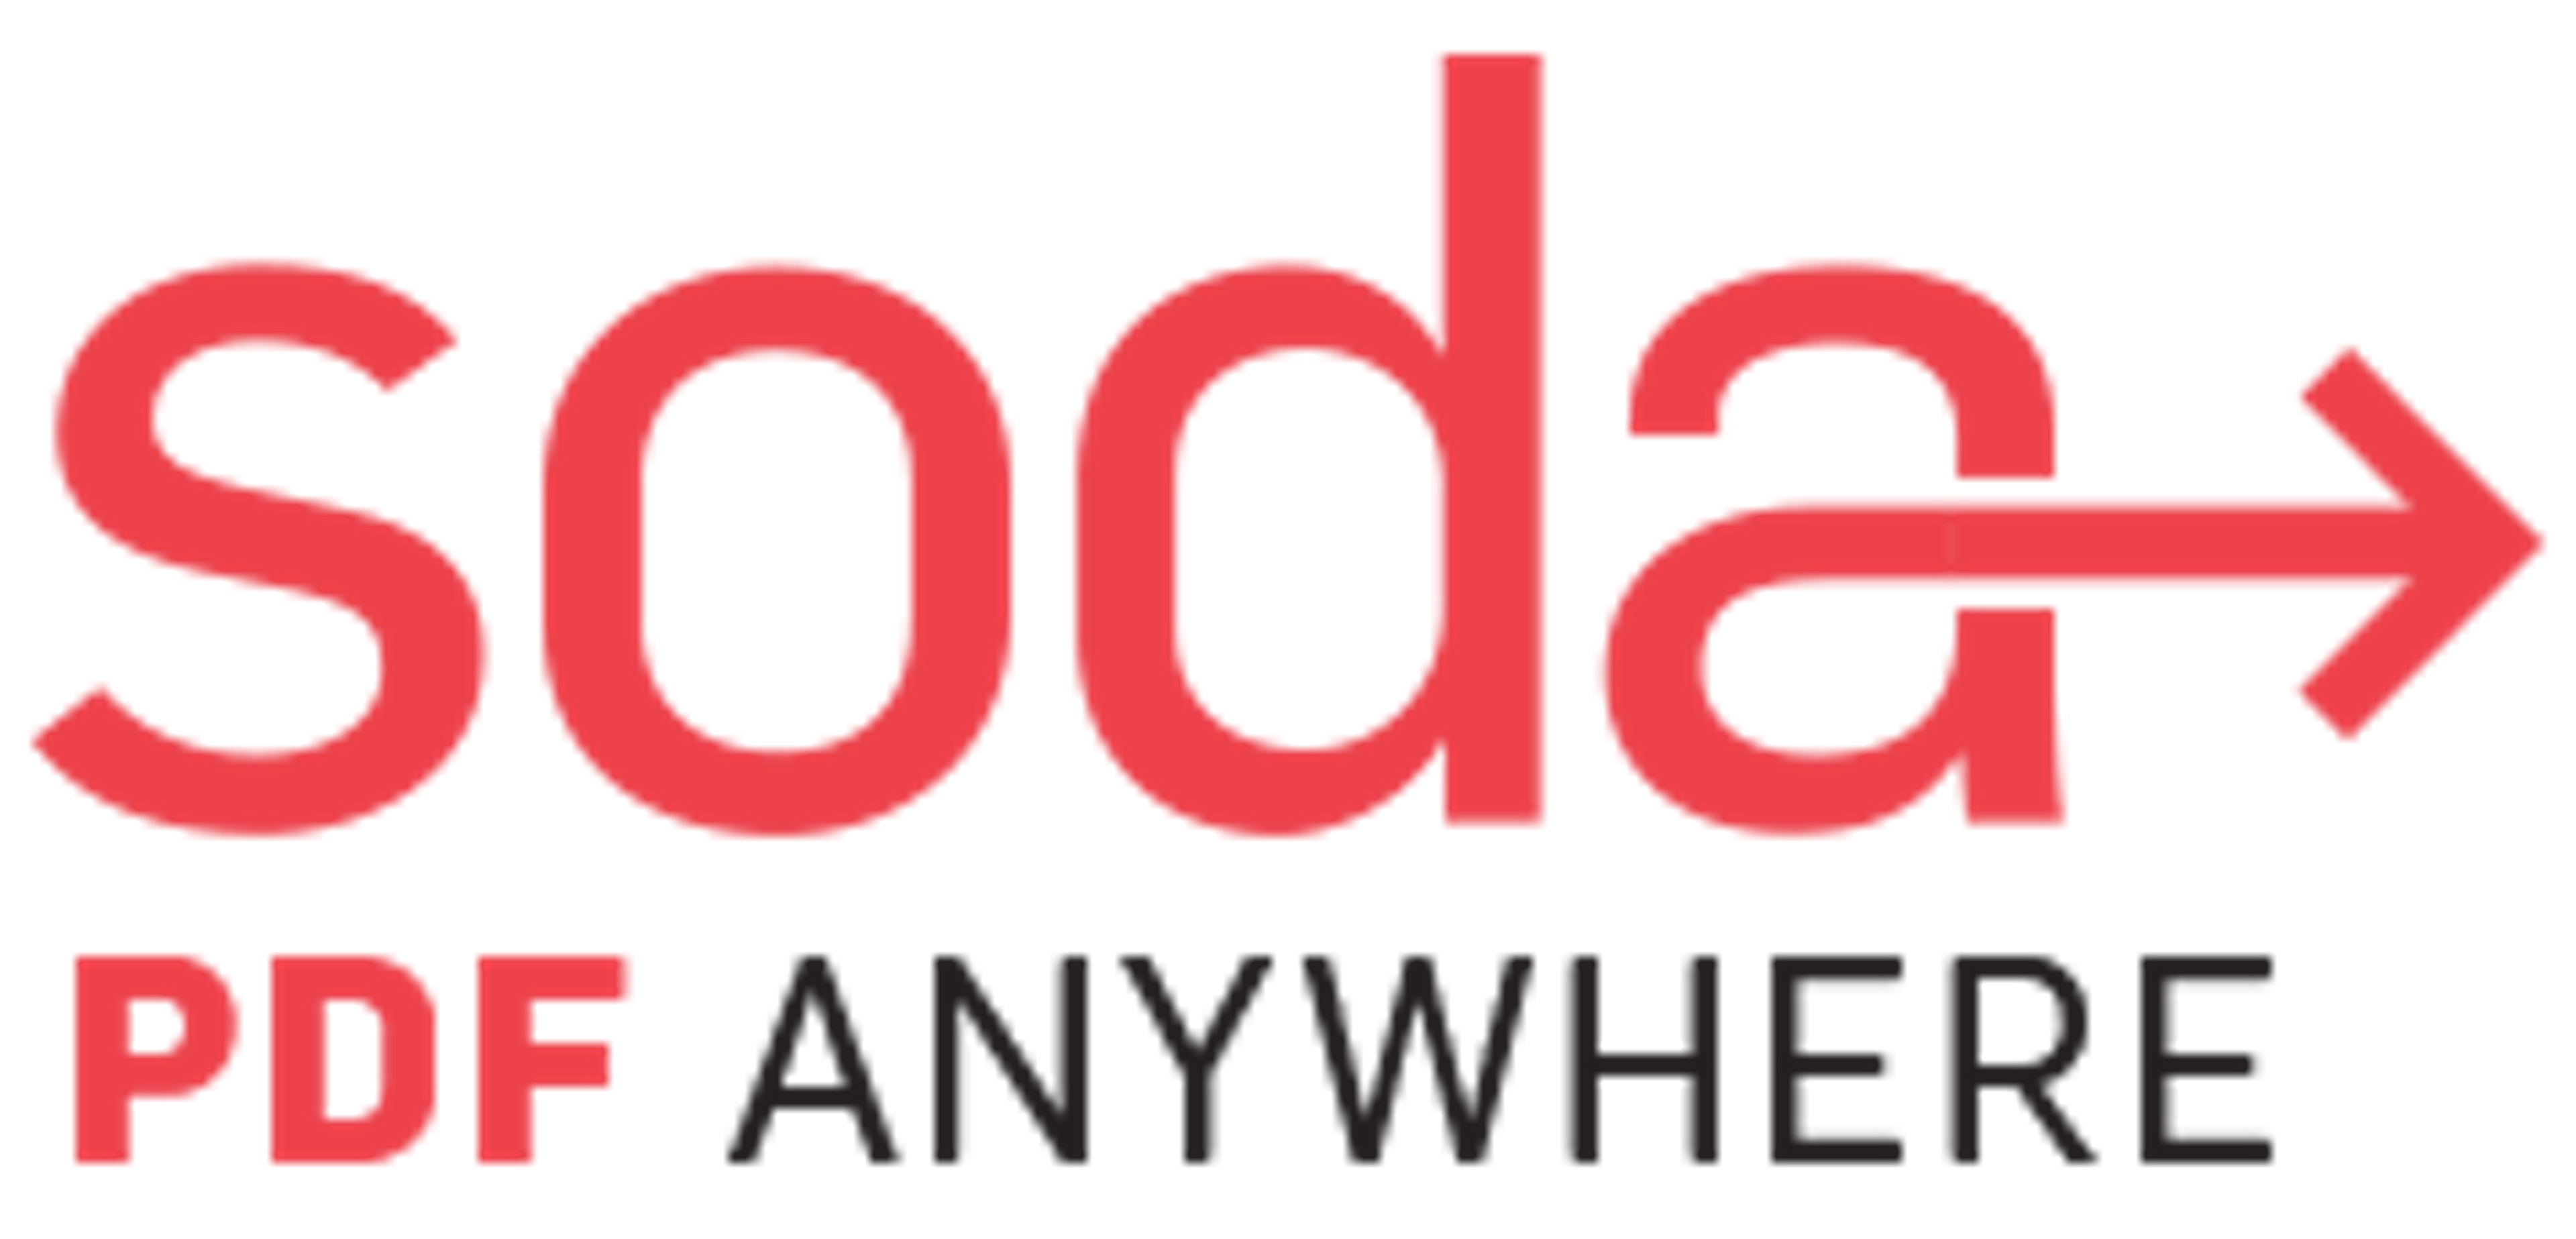 Soda PDF Logo